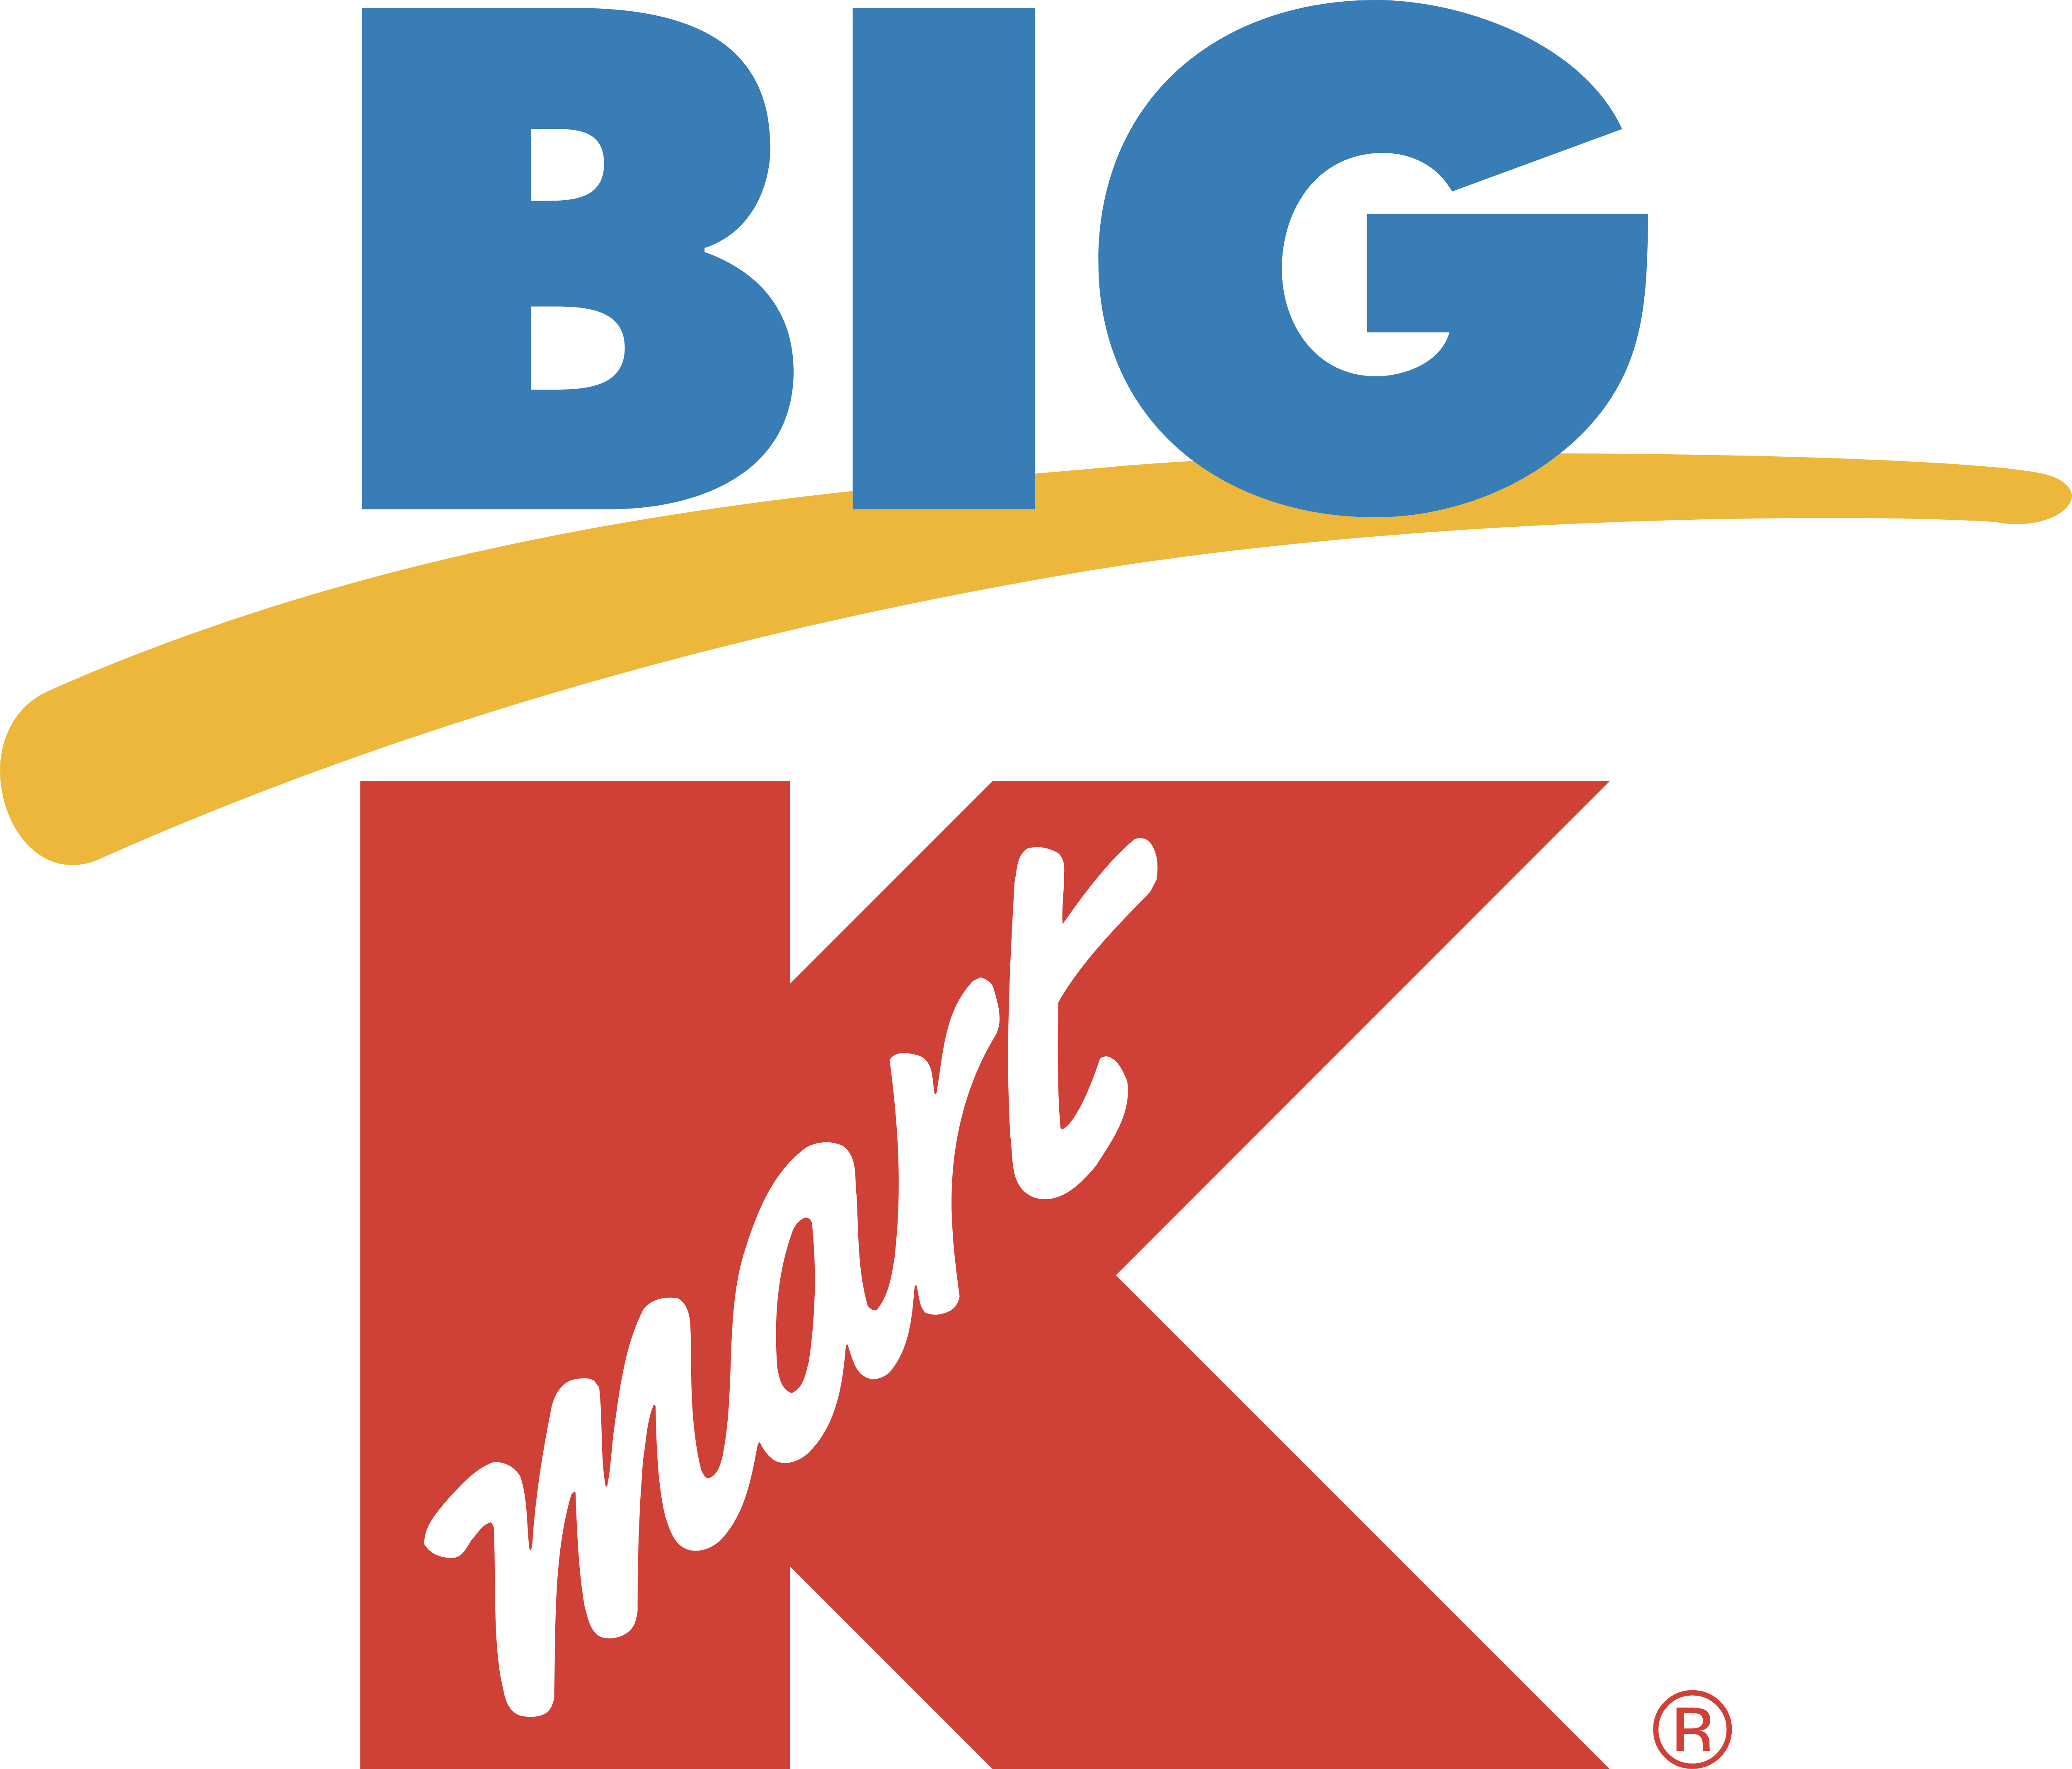 Big Kmart Logo Logodix